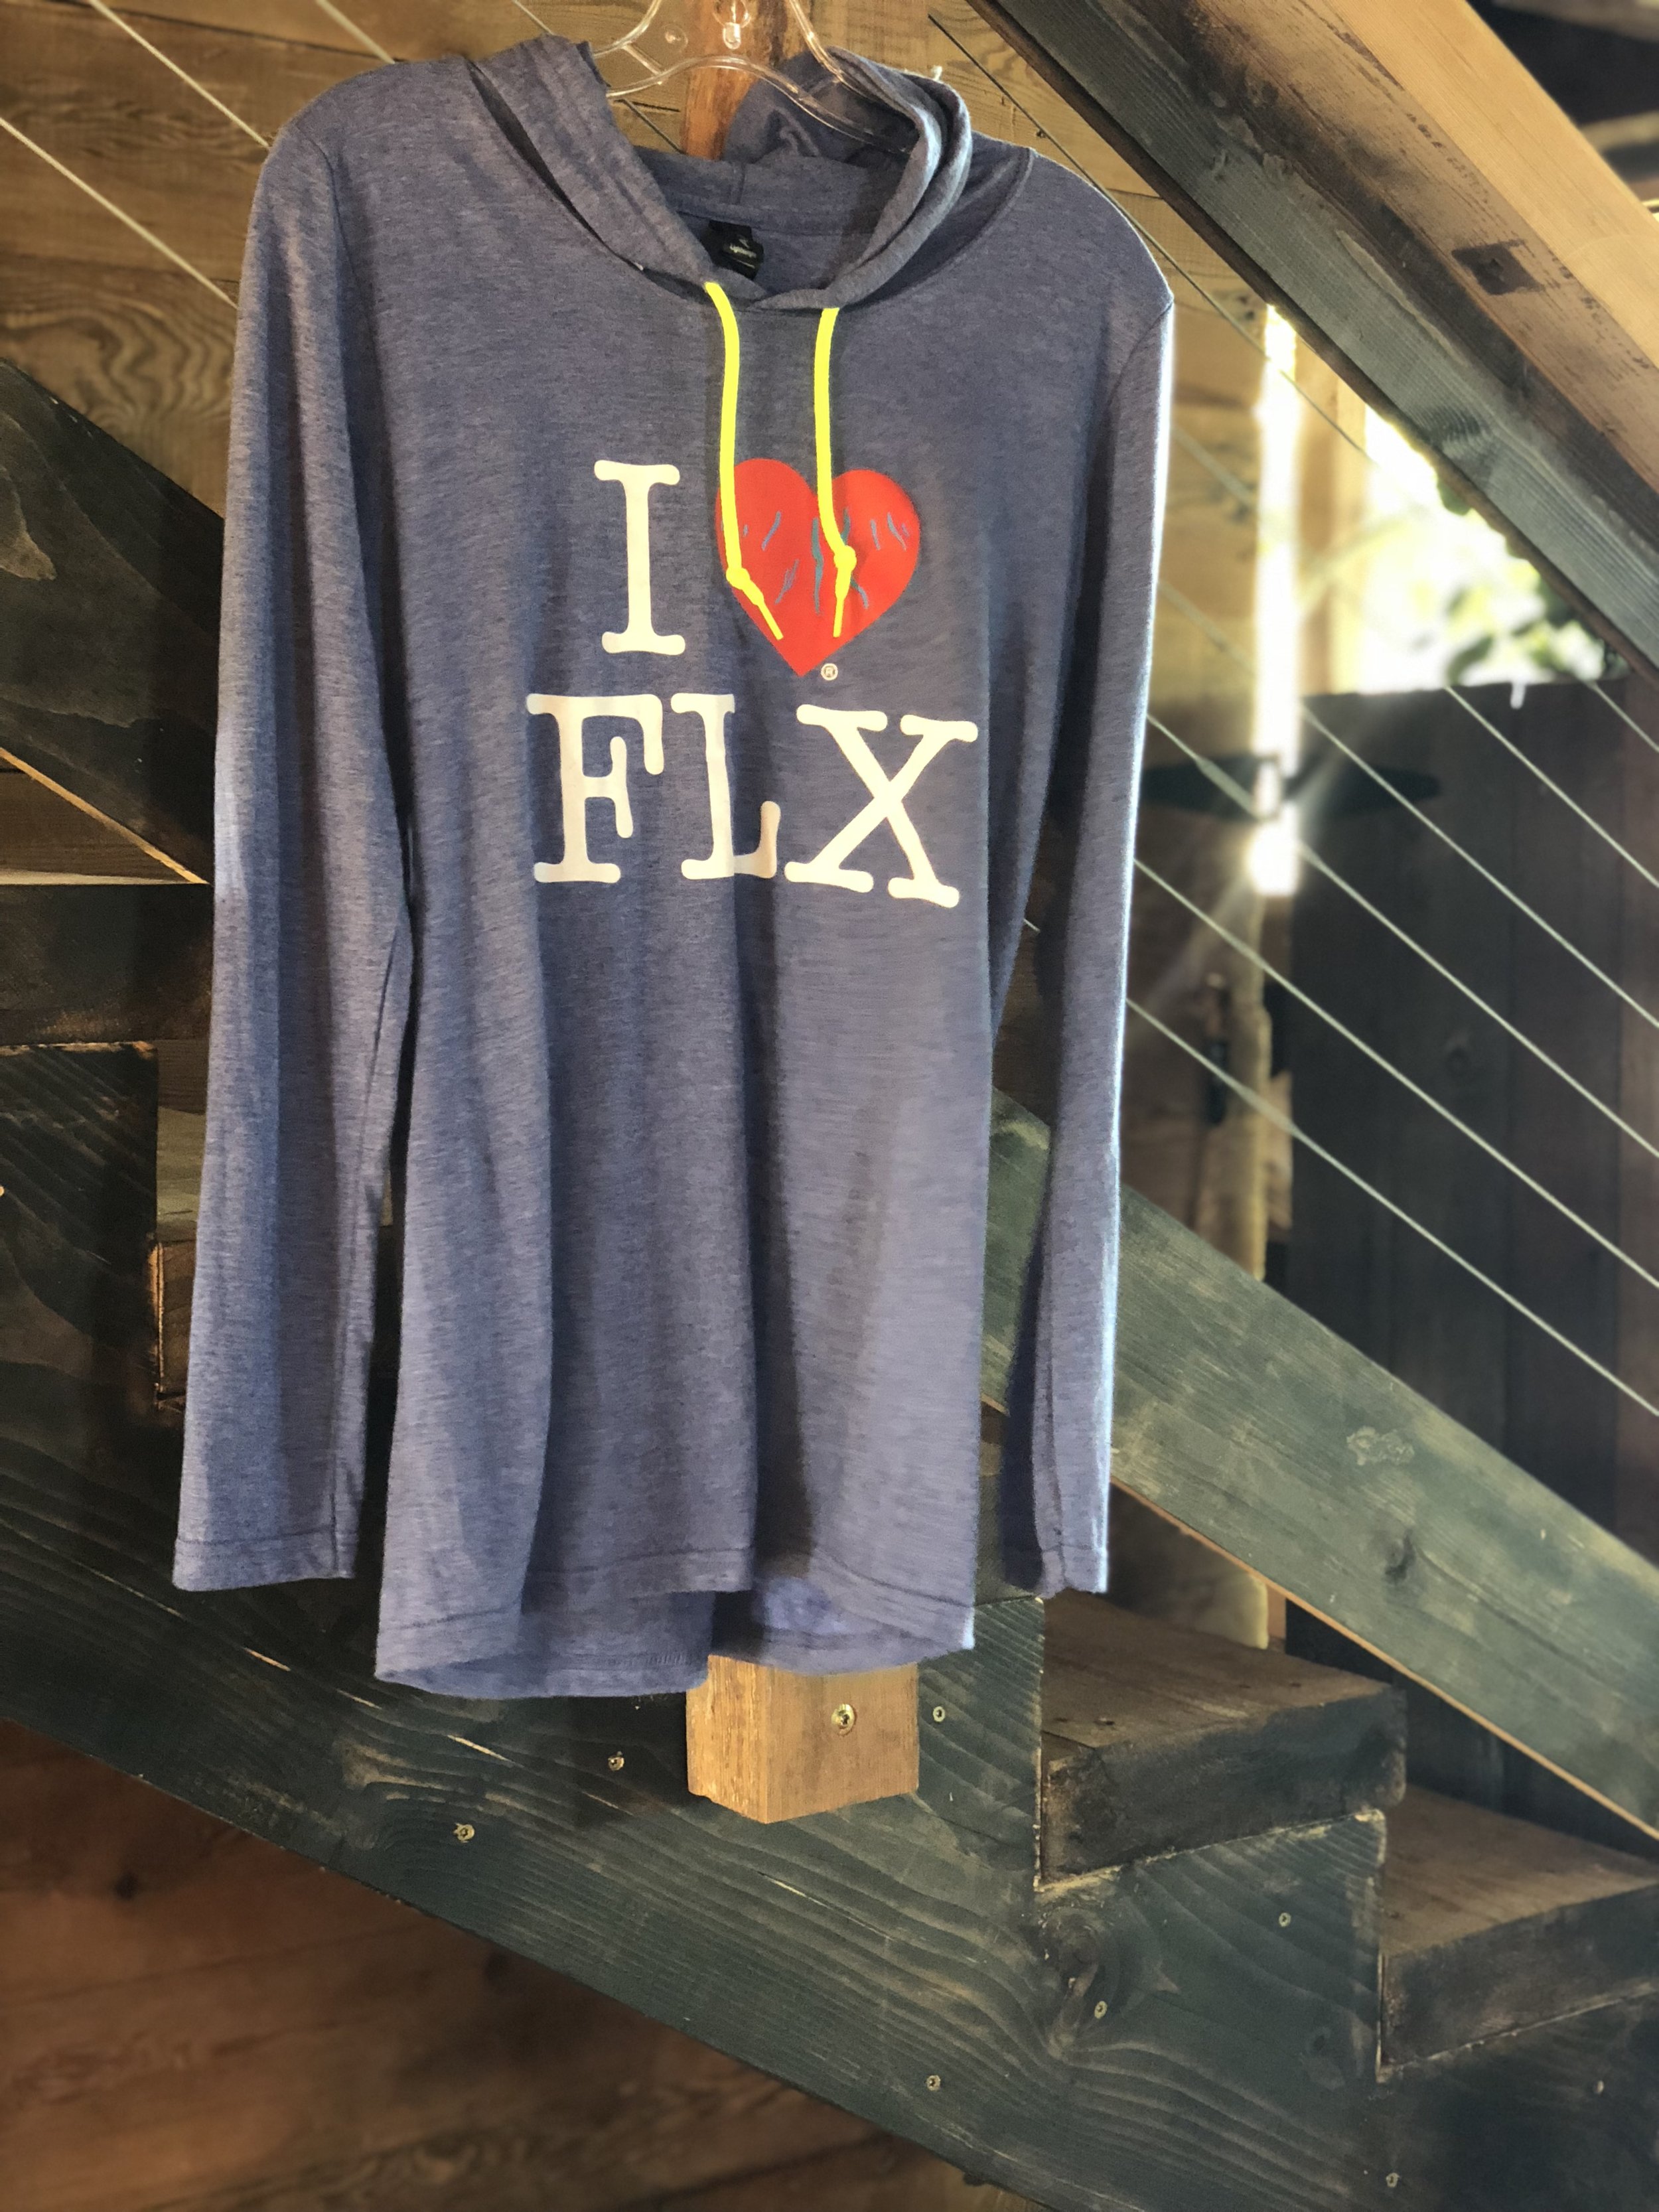 Flx Tshirt